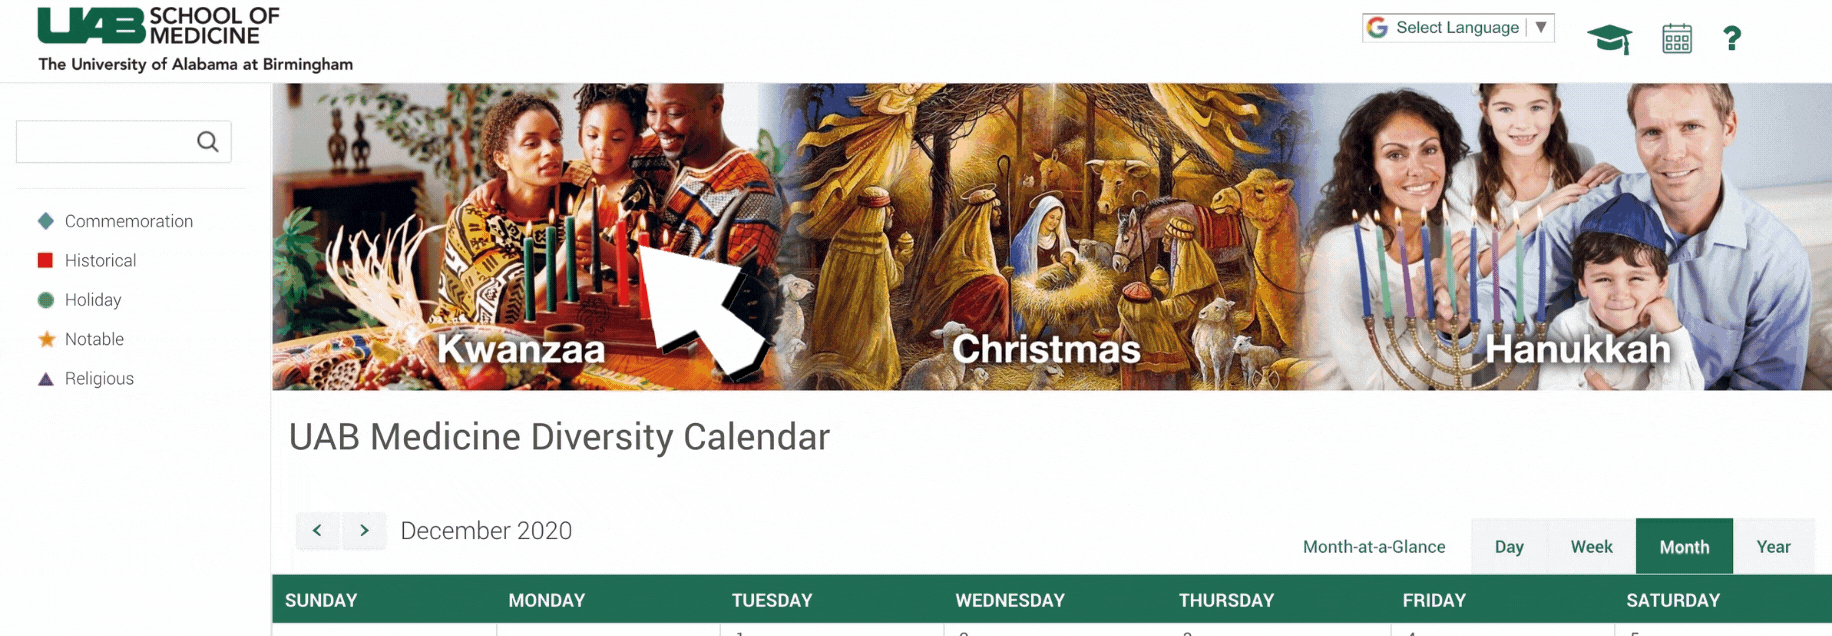 Diversity Calendar Click